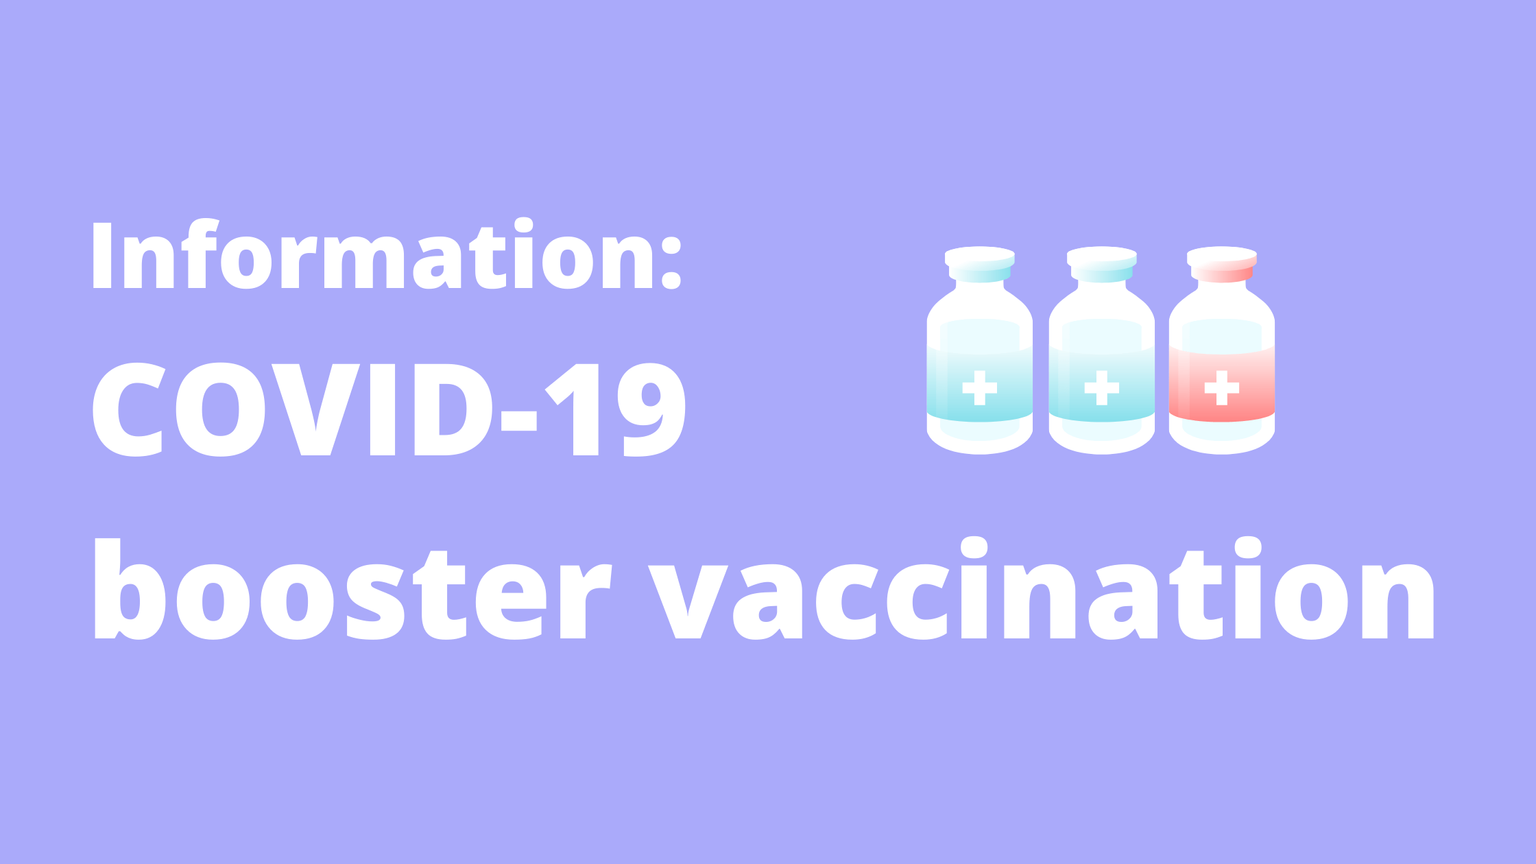 Paarse achtergrond met drie medische dosiscontainers en de volgende woorden in witte letters: Informatie COVID-19 boostervaccinatie 